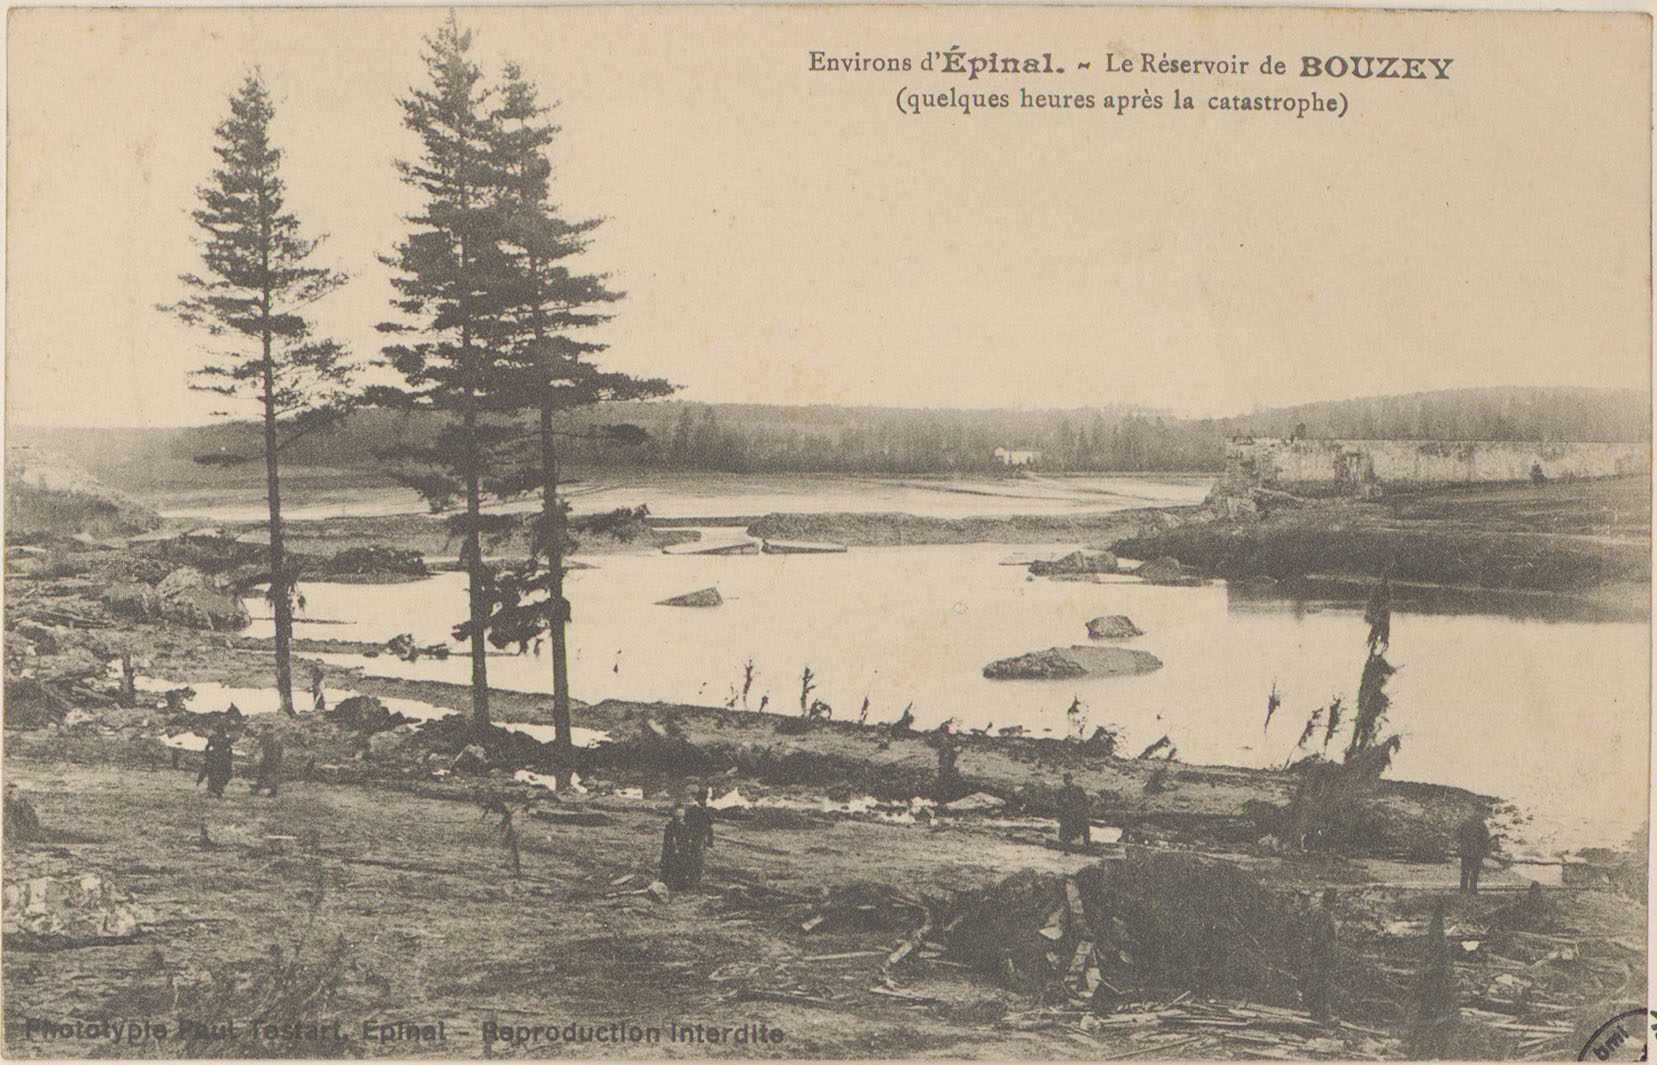 Contenu du Environs d'Épinal, Le Réservoir de Bouzey (quelques heures après la catastrophe)